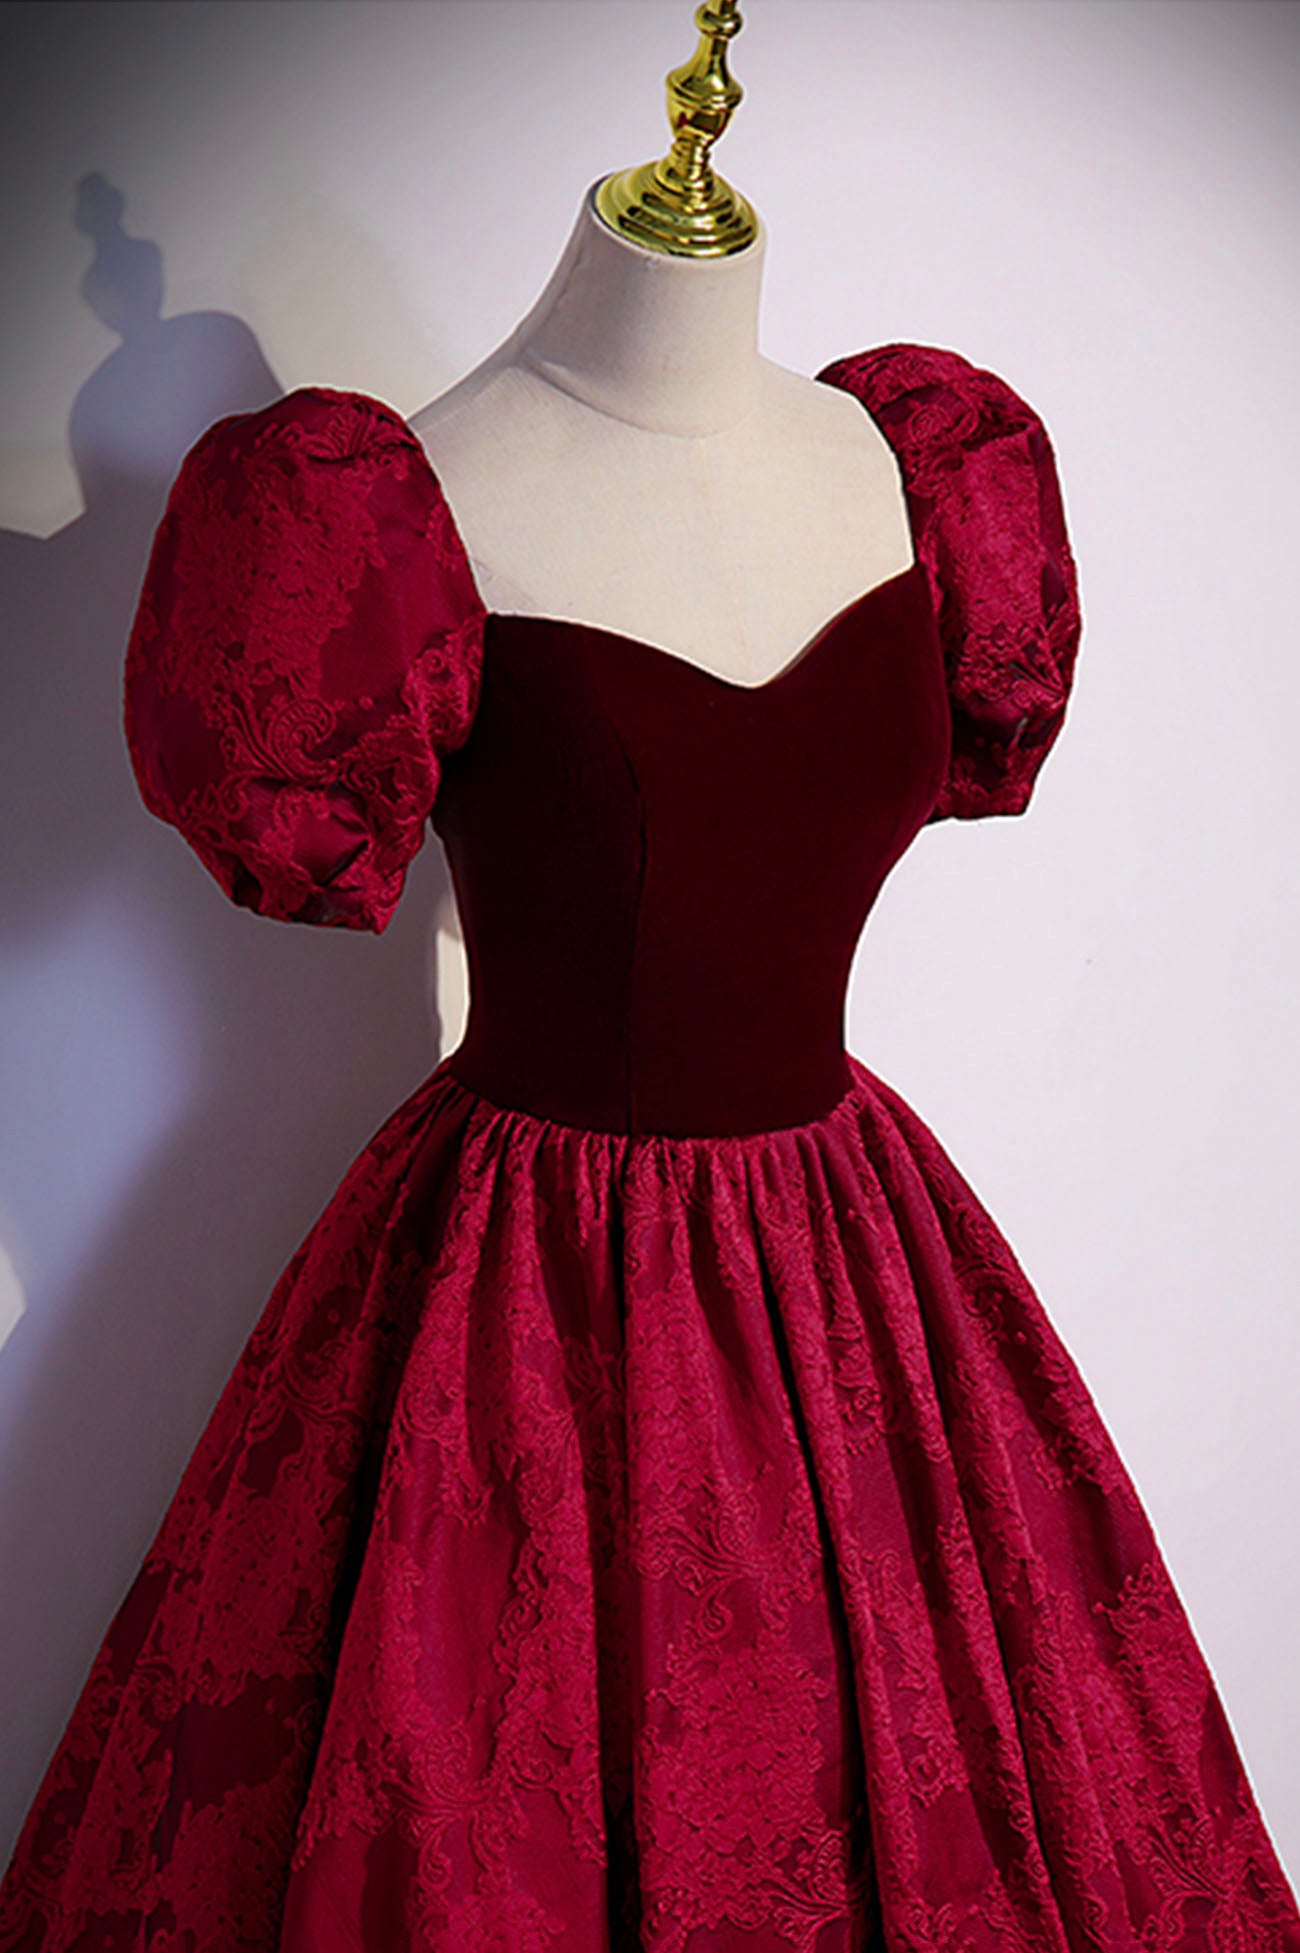 Burgundy Velvet Long Prom Dress, A-Line Short Sleeve Evening Dress